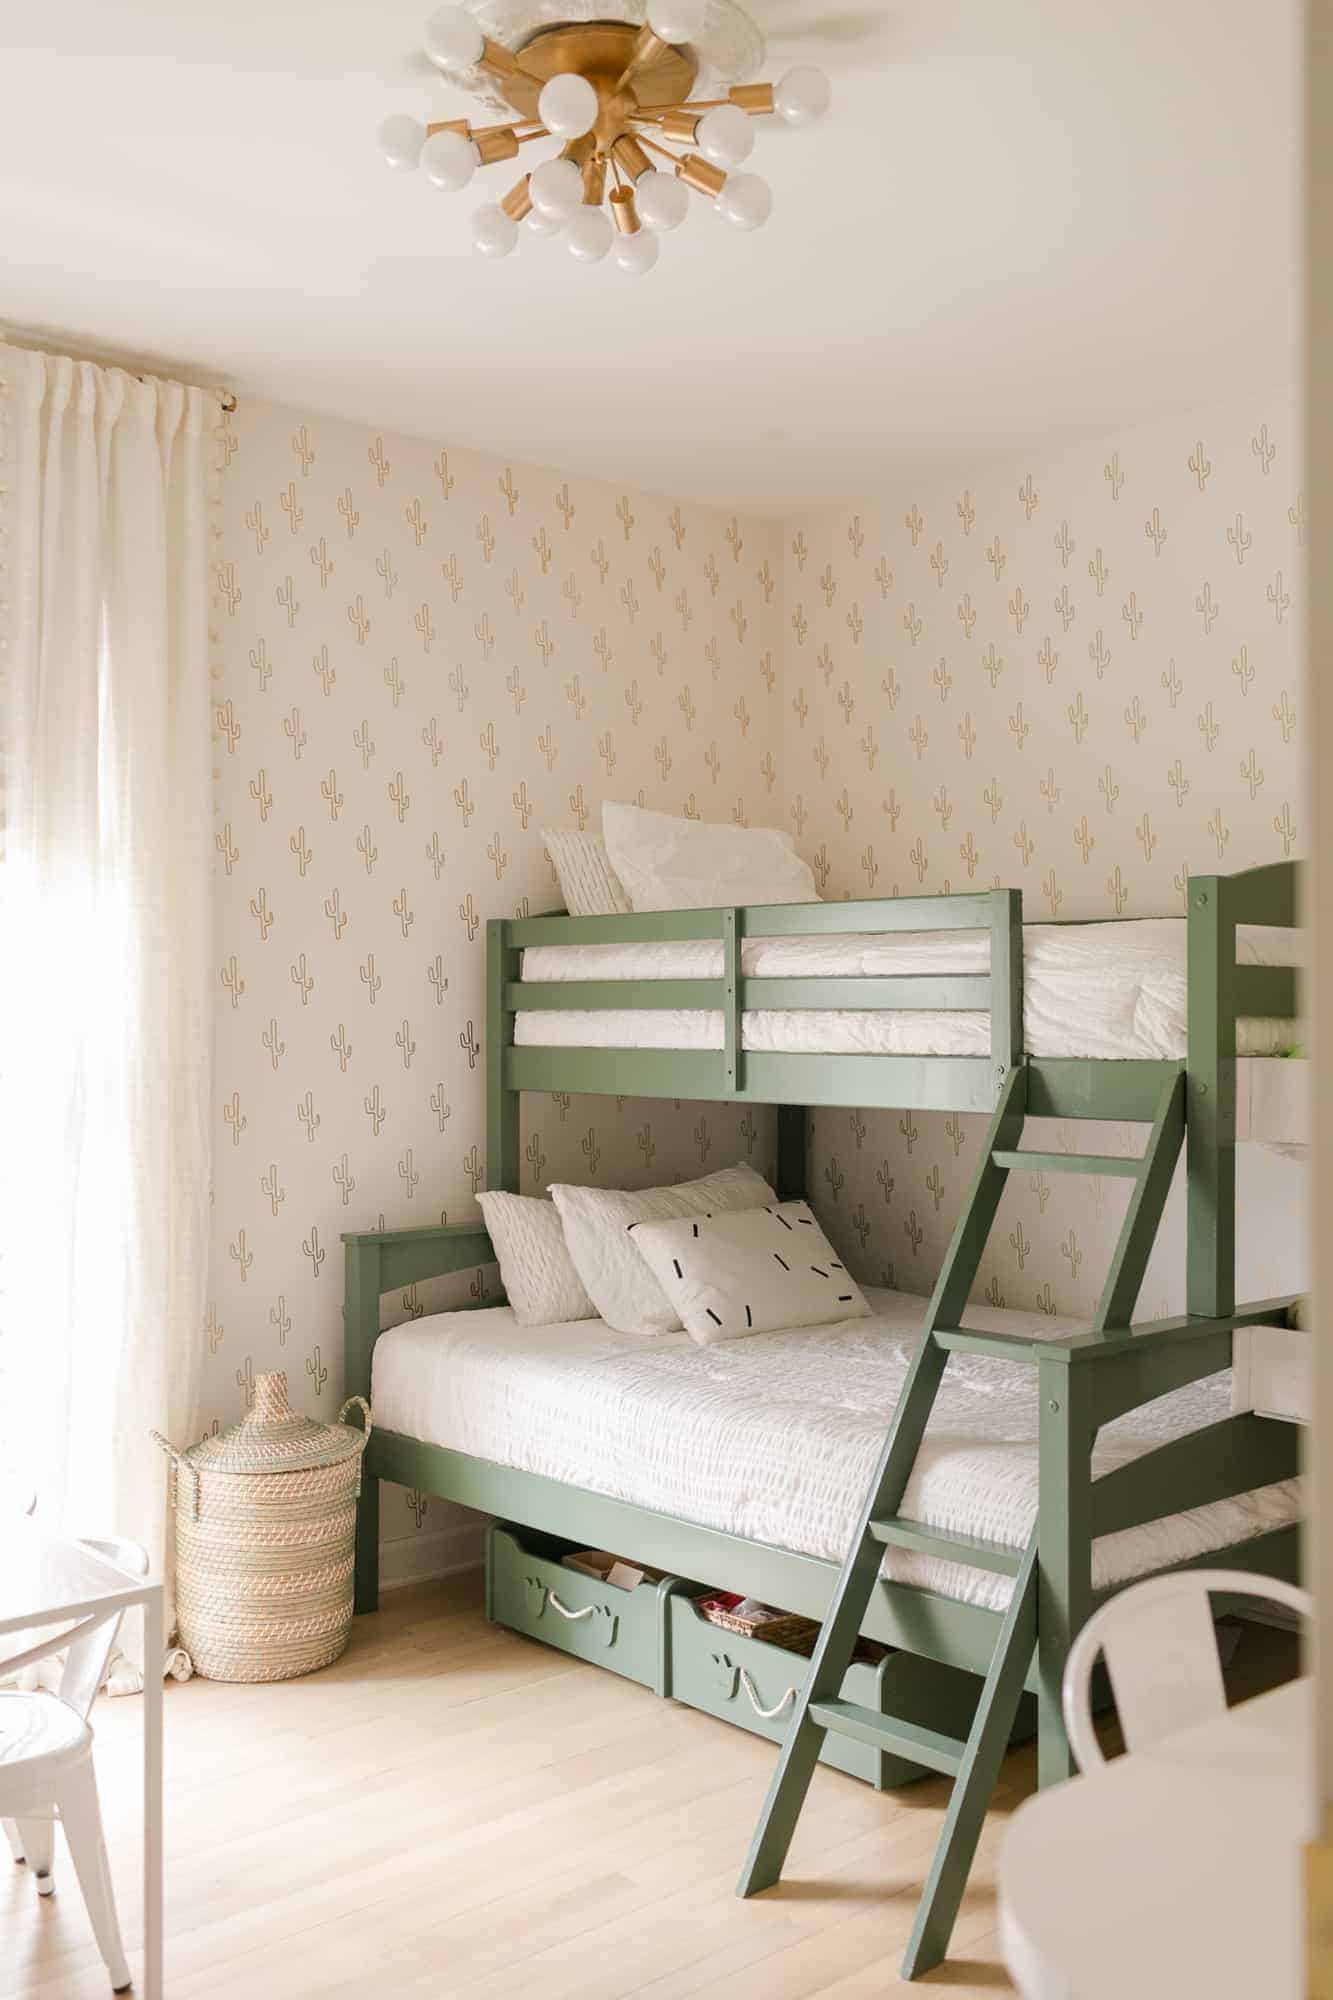 green bunk beds in kid's room